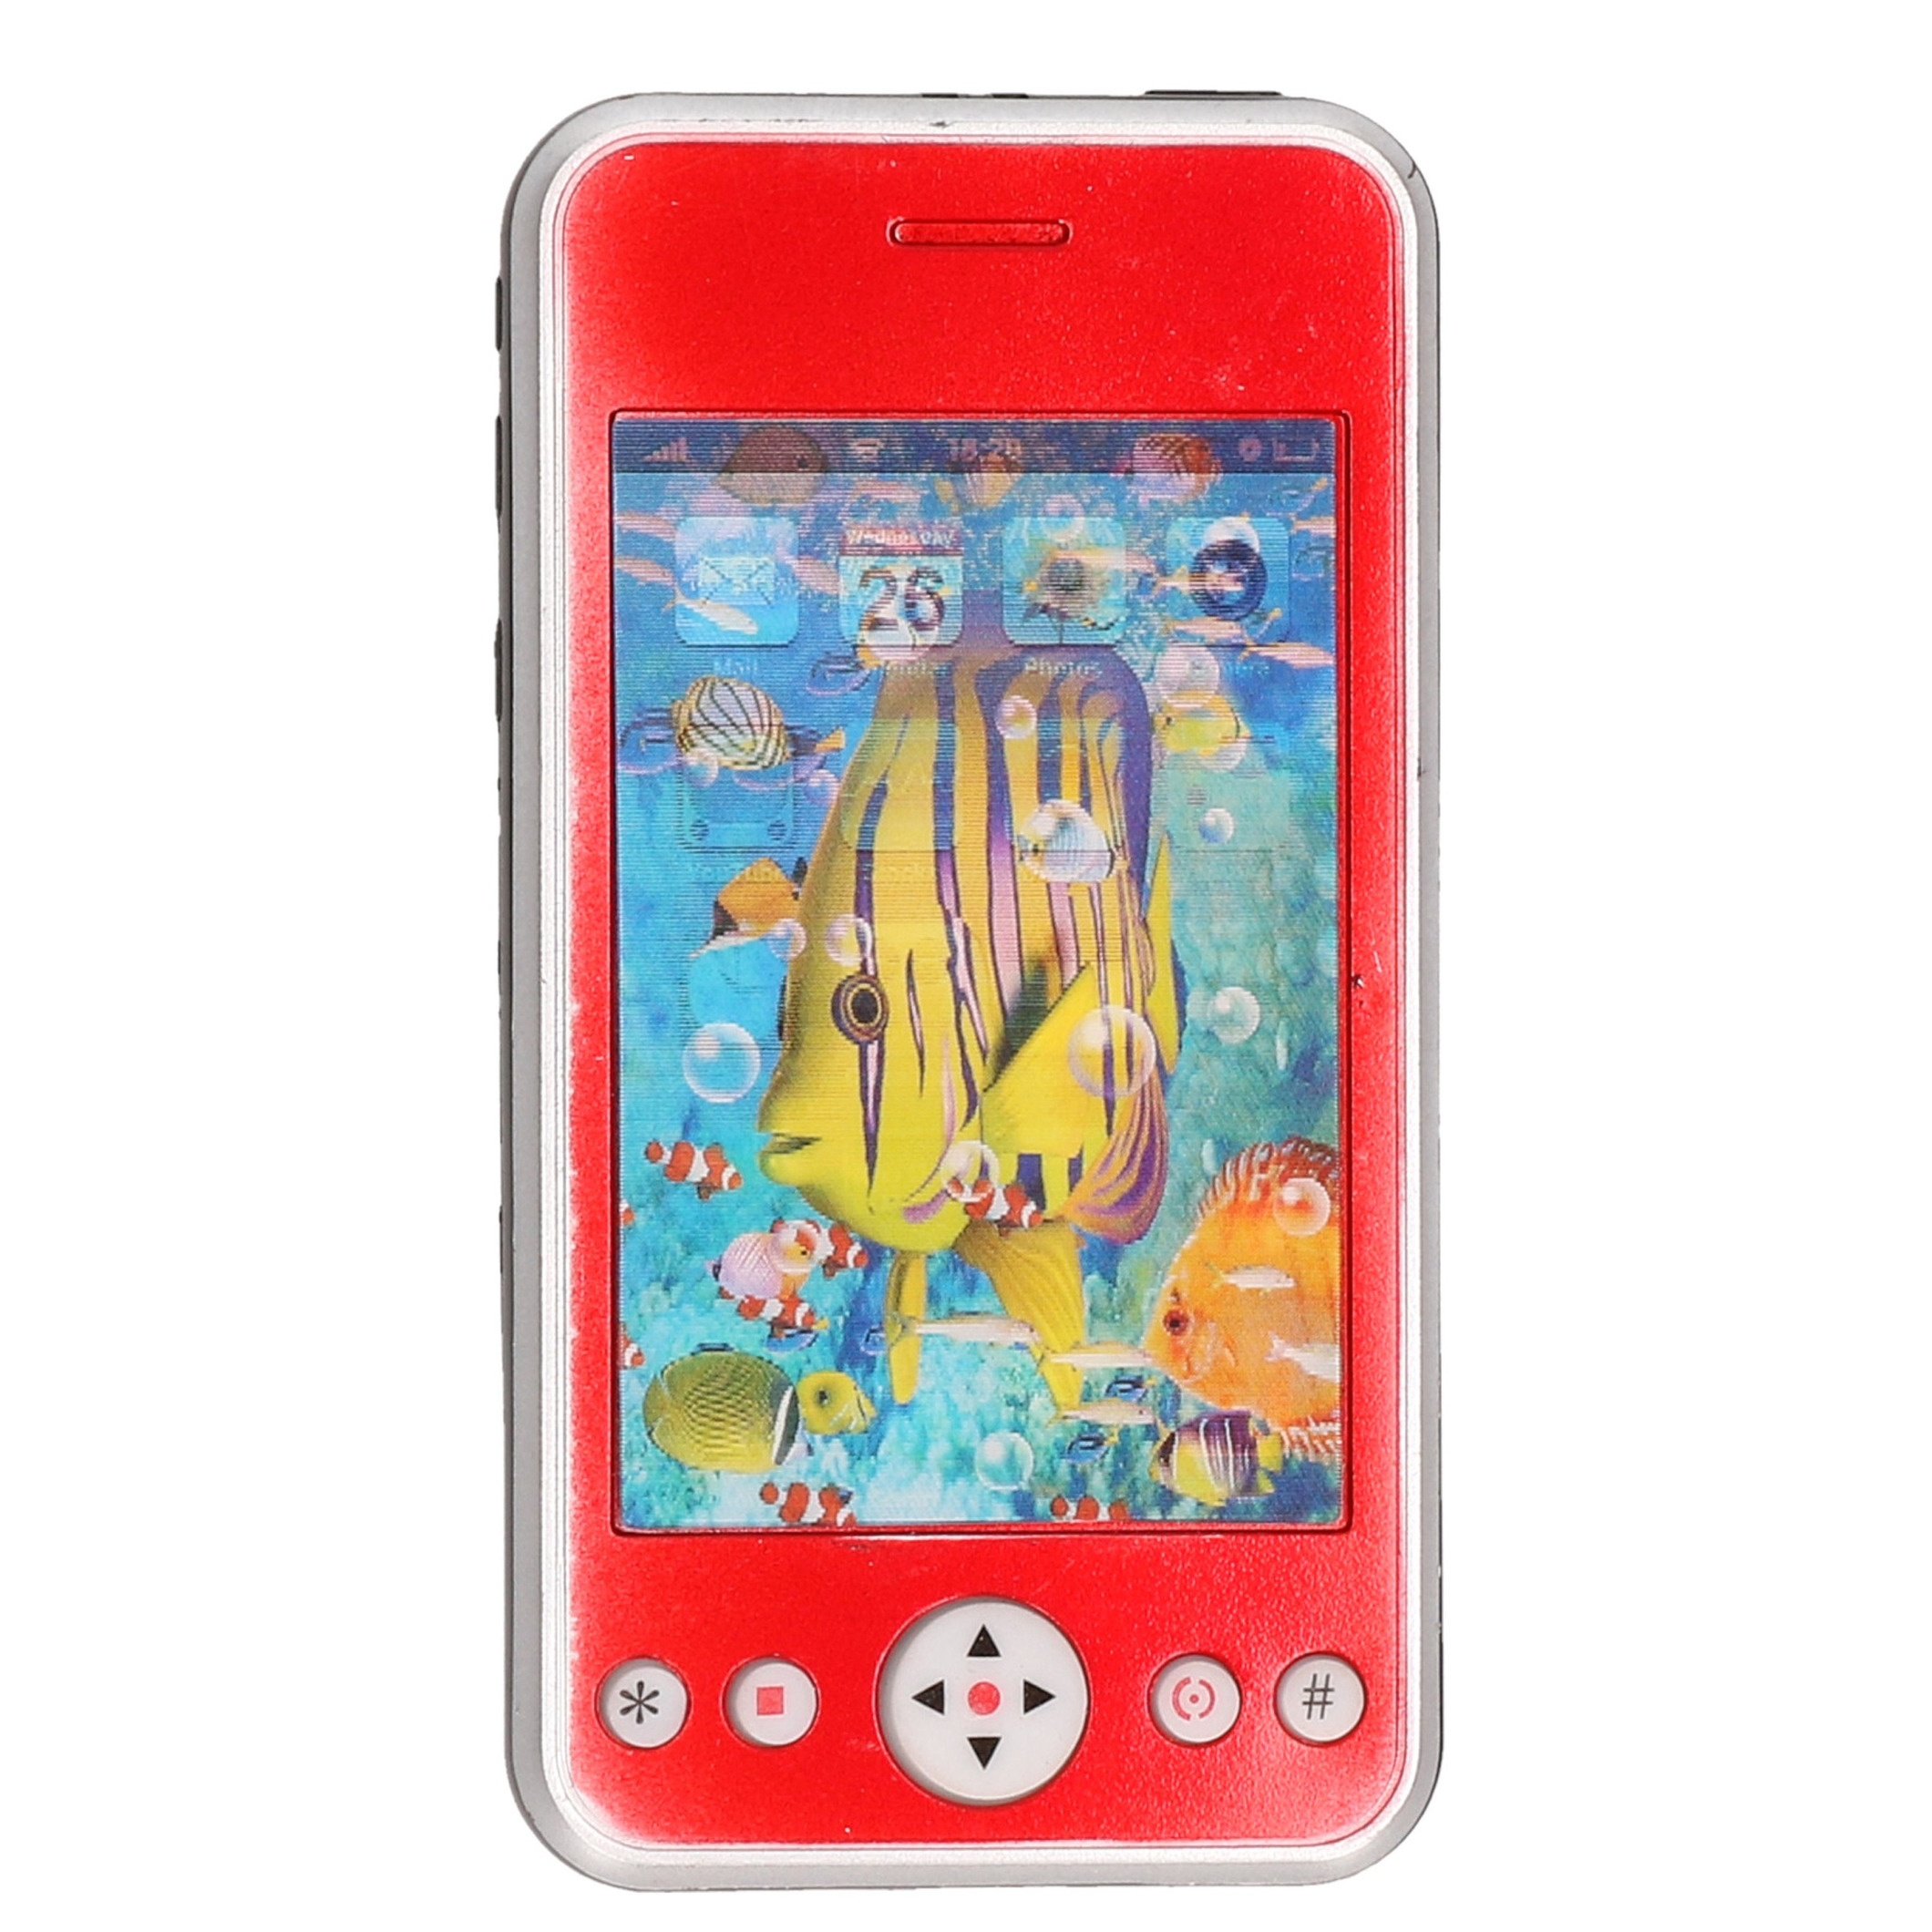 Speelgoed smartphone-mobiele telefoon rood met licht en geluid 11 cm